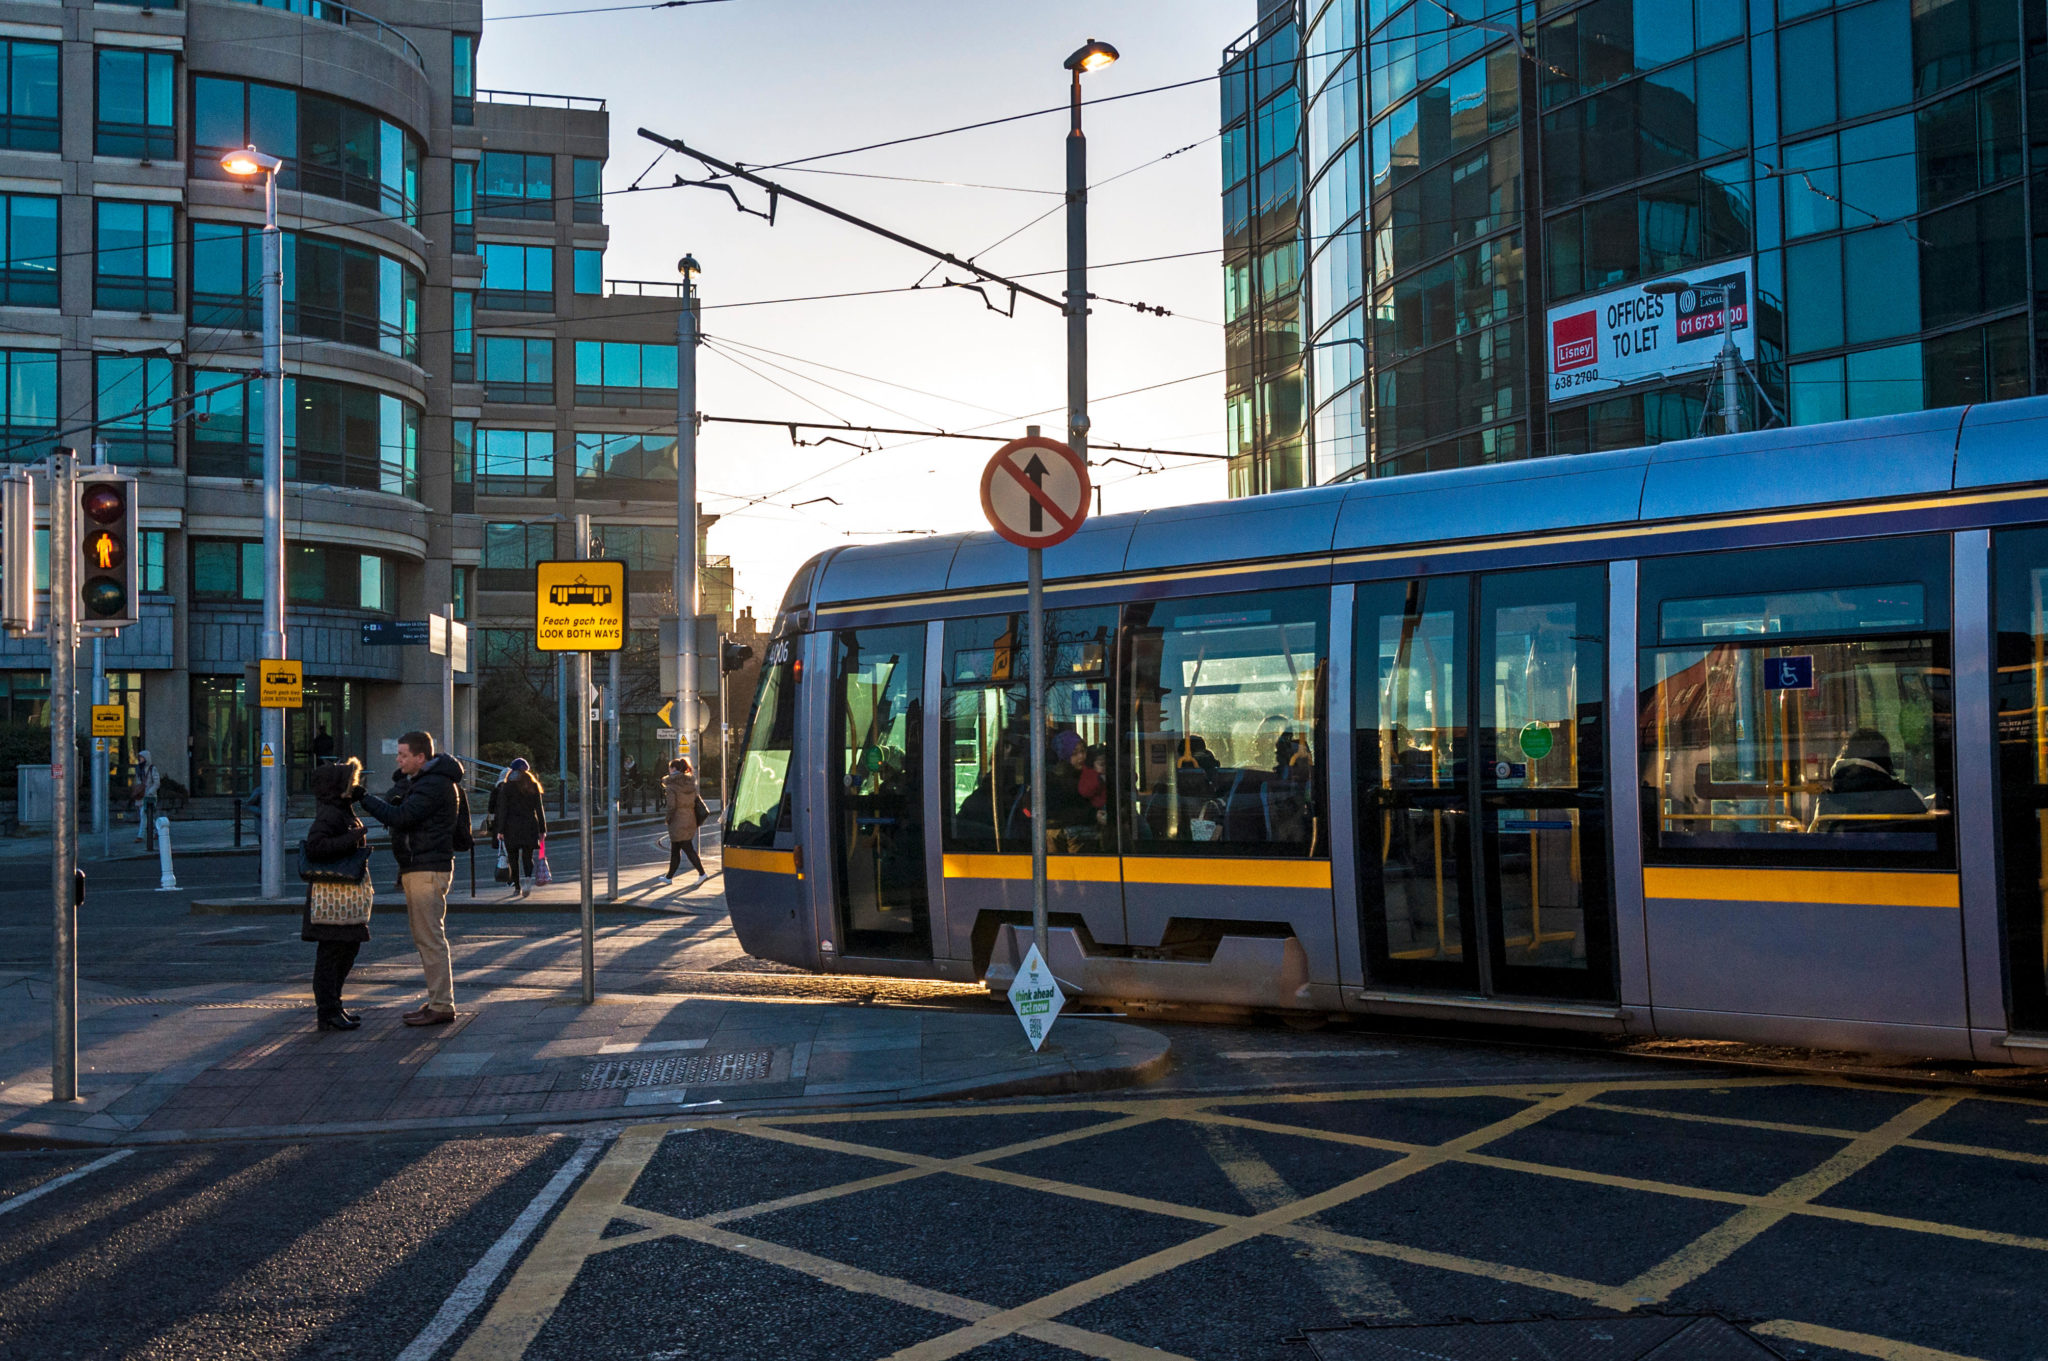 ALuas tram in Dublin